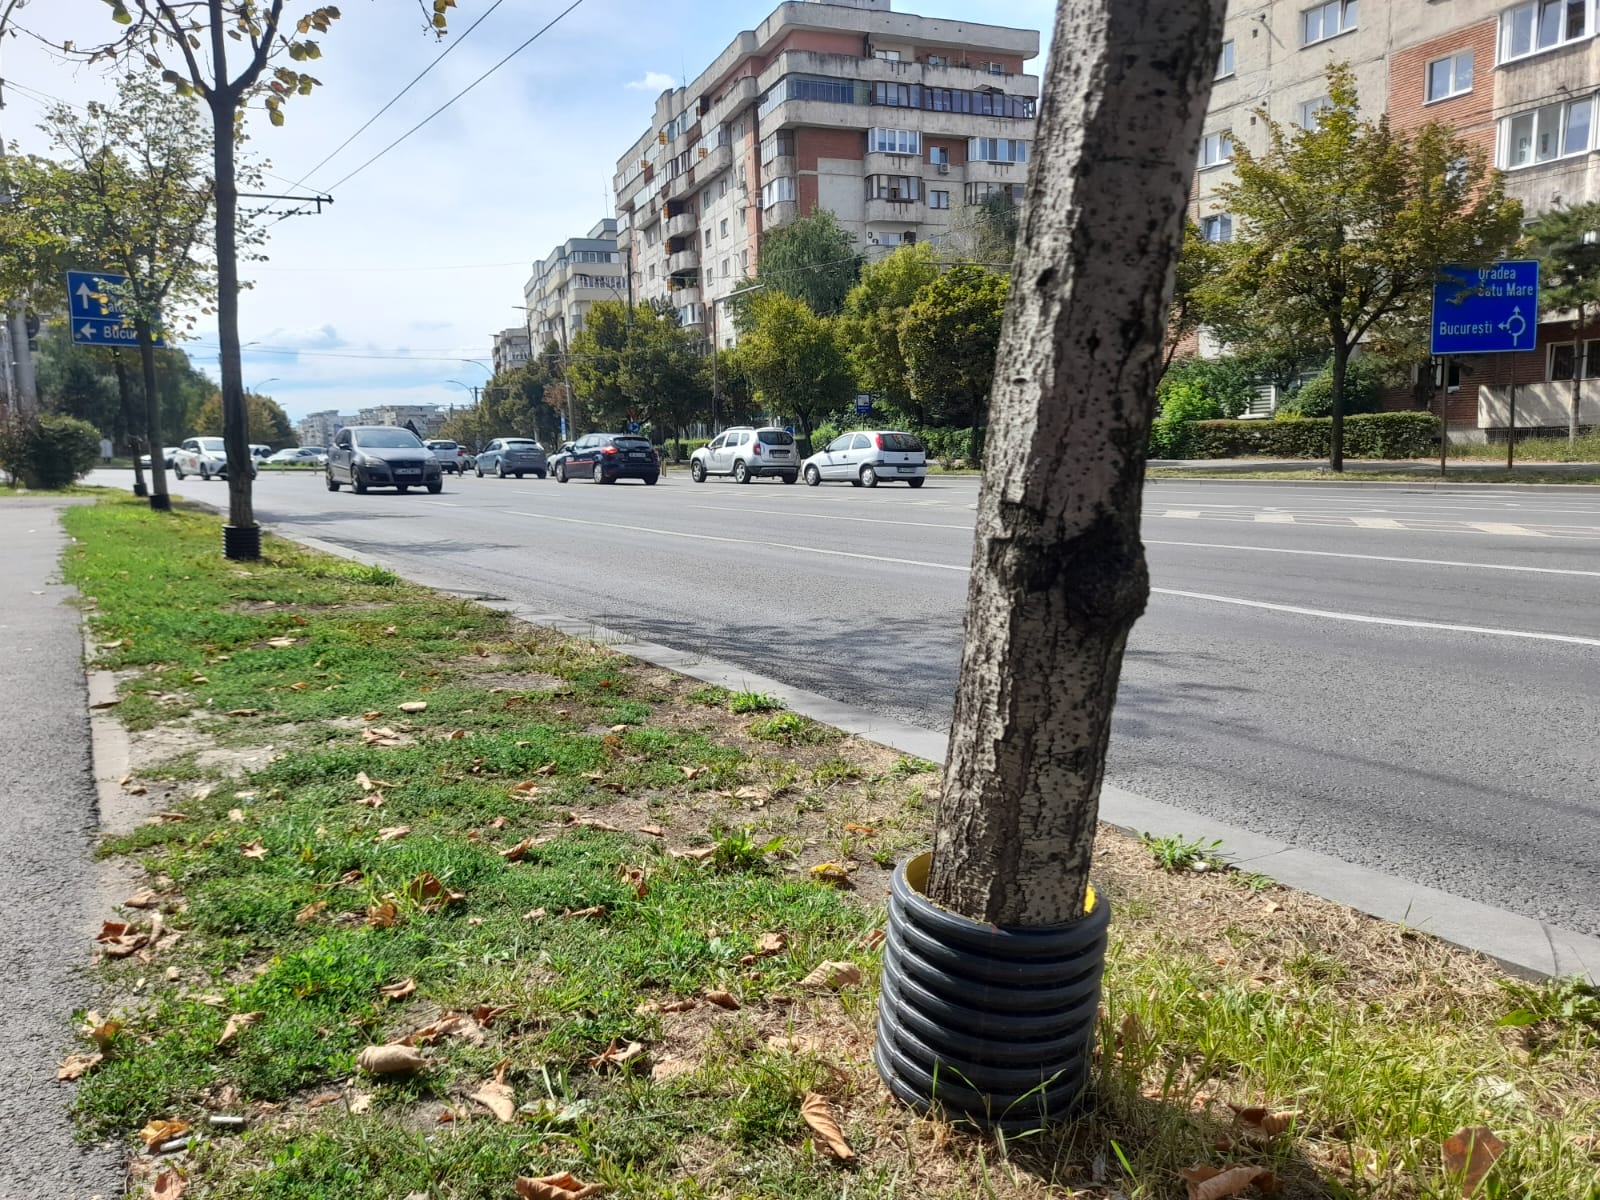 Protecții de plastic apără pomii de coasele mânuite prost, dar „julesc” estetic ochii trecătorilor. FOTO: Monitorul de Cluj